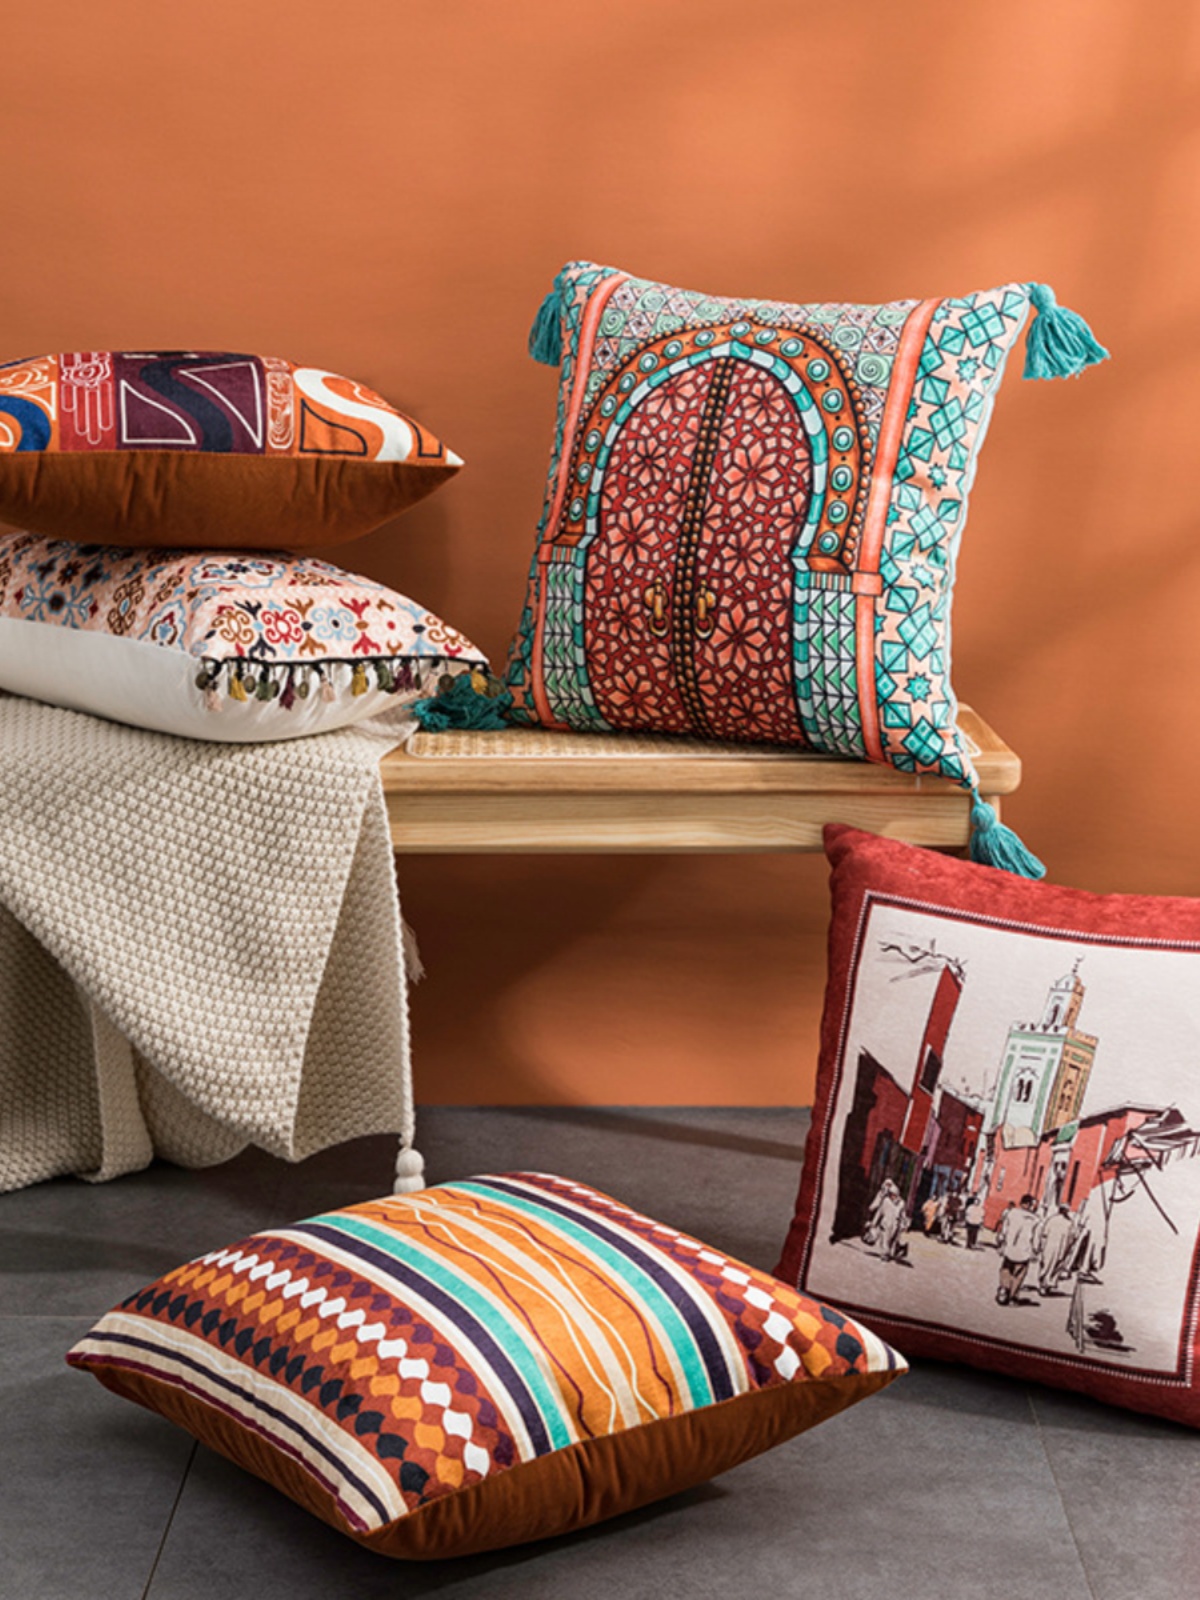 東南亞風摩洛哥波西米亞客廳靠墊套美式現代民宿方形抱枕